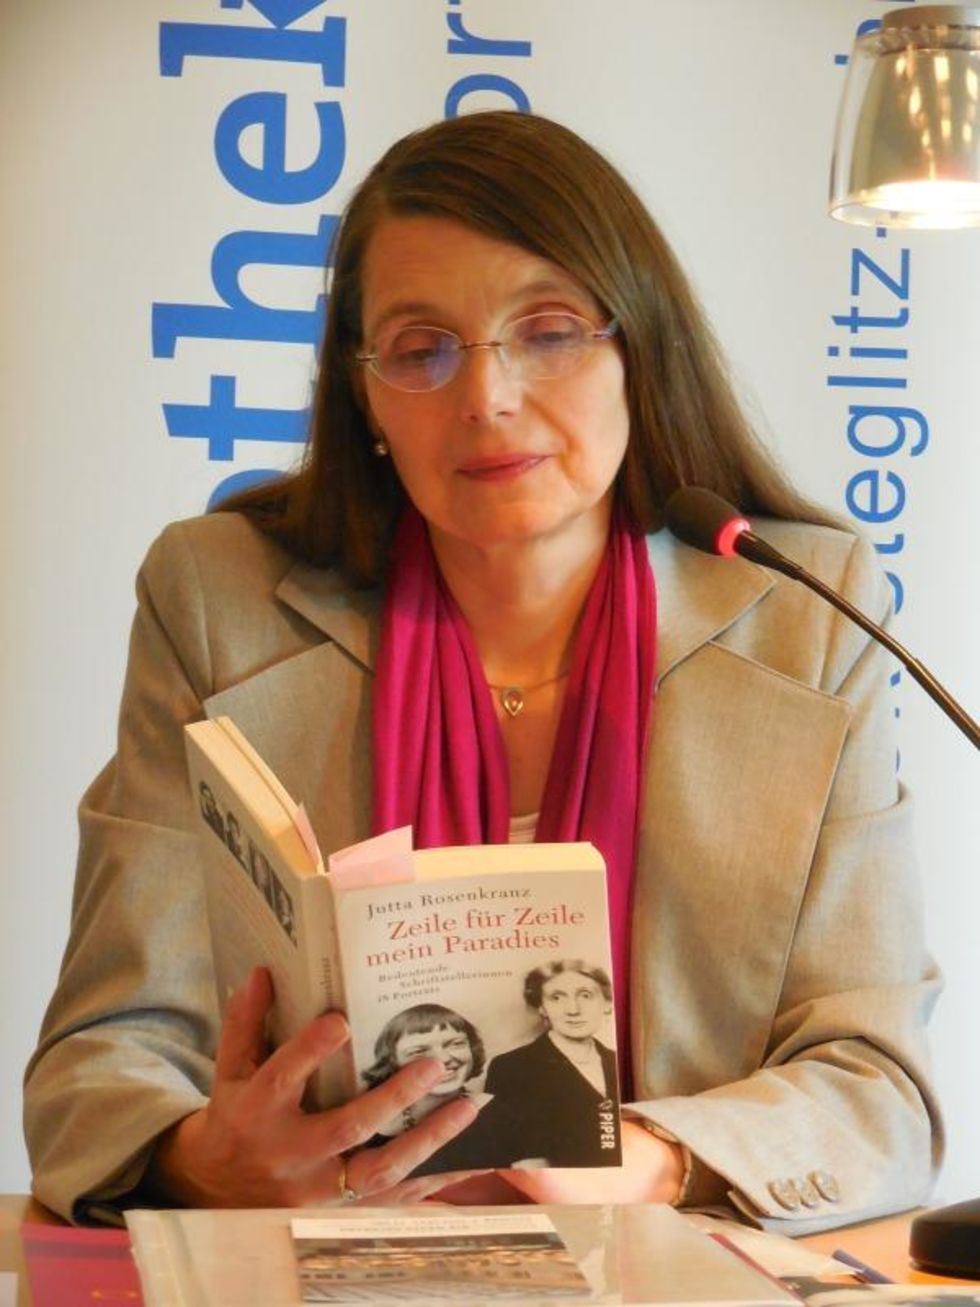 Jutta Rosenkranz at a reading in the Ingeborg Drewitz Library in Berlin-Steglitz